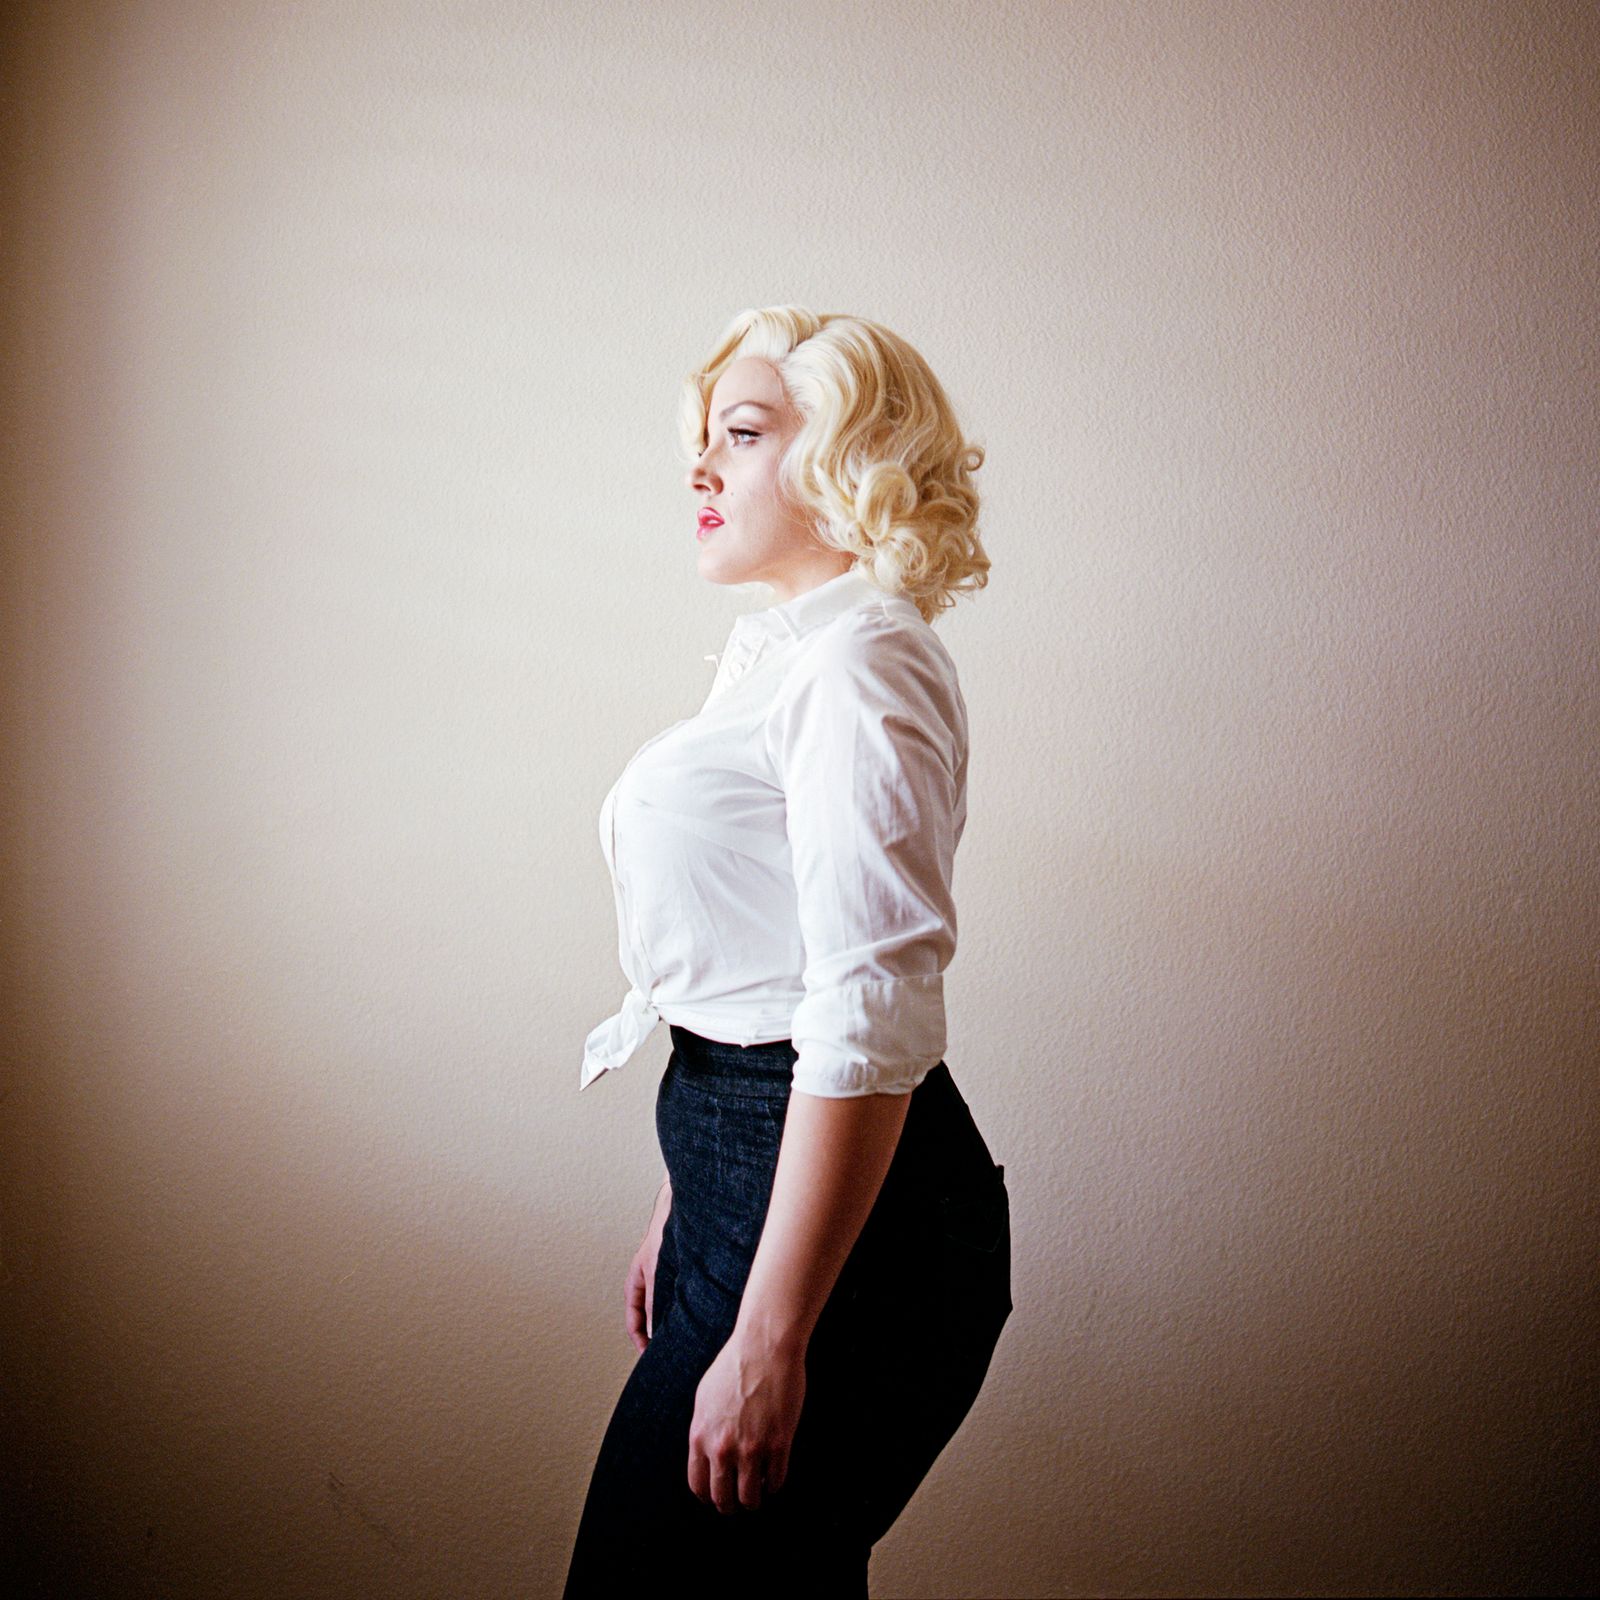 © Emily Berl - Jami as Marilyn Monroe, Henderson, NV, 2013.